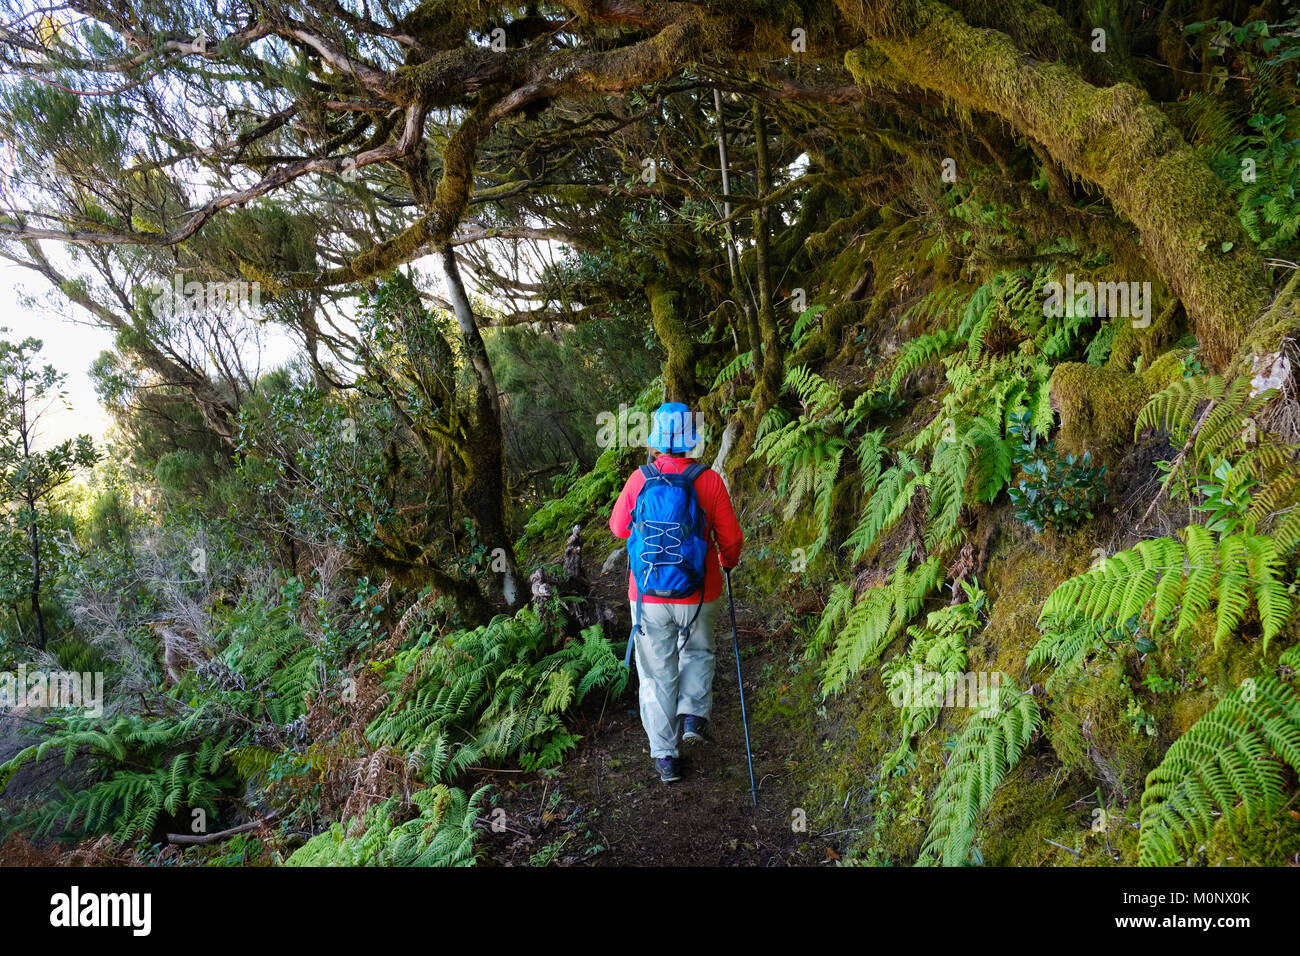 Donna trekking sul Sentiero forestale nella foresta nuvolosa,Enchereda,Parque Natural de Majona,La Gomera,Isole Canarie,Spagna Foto Stock